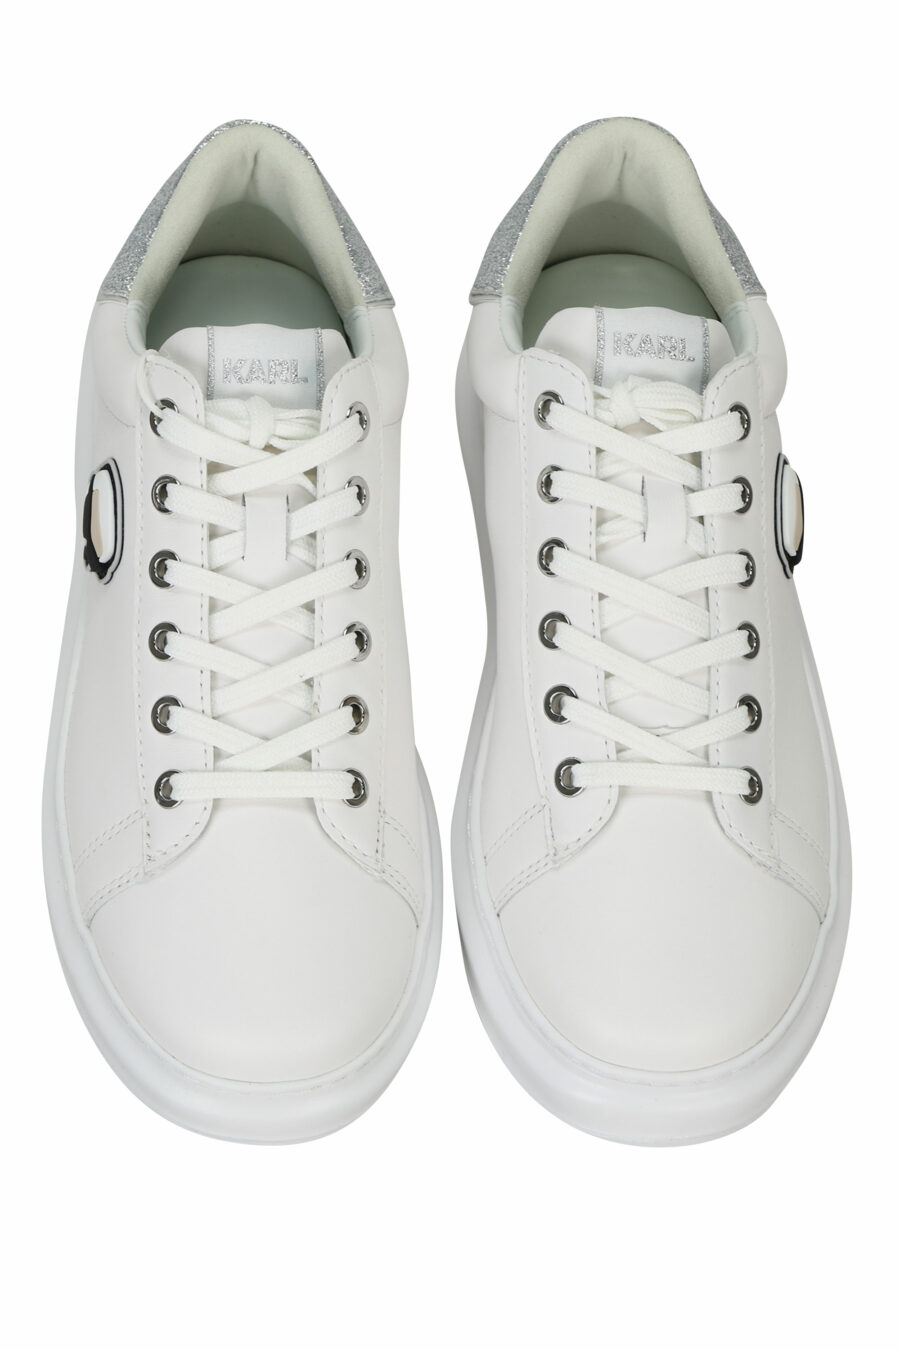 Zapatillas blancas "Kapri" con logo en goma y detalle plateado brillante - 5059529351174 4